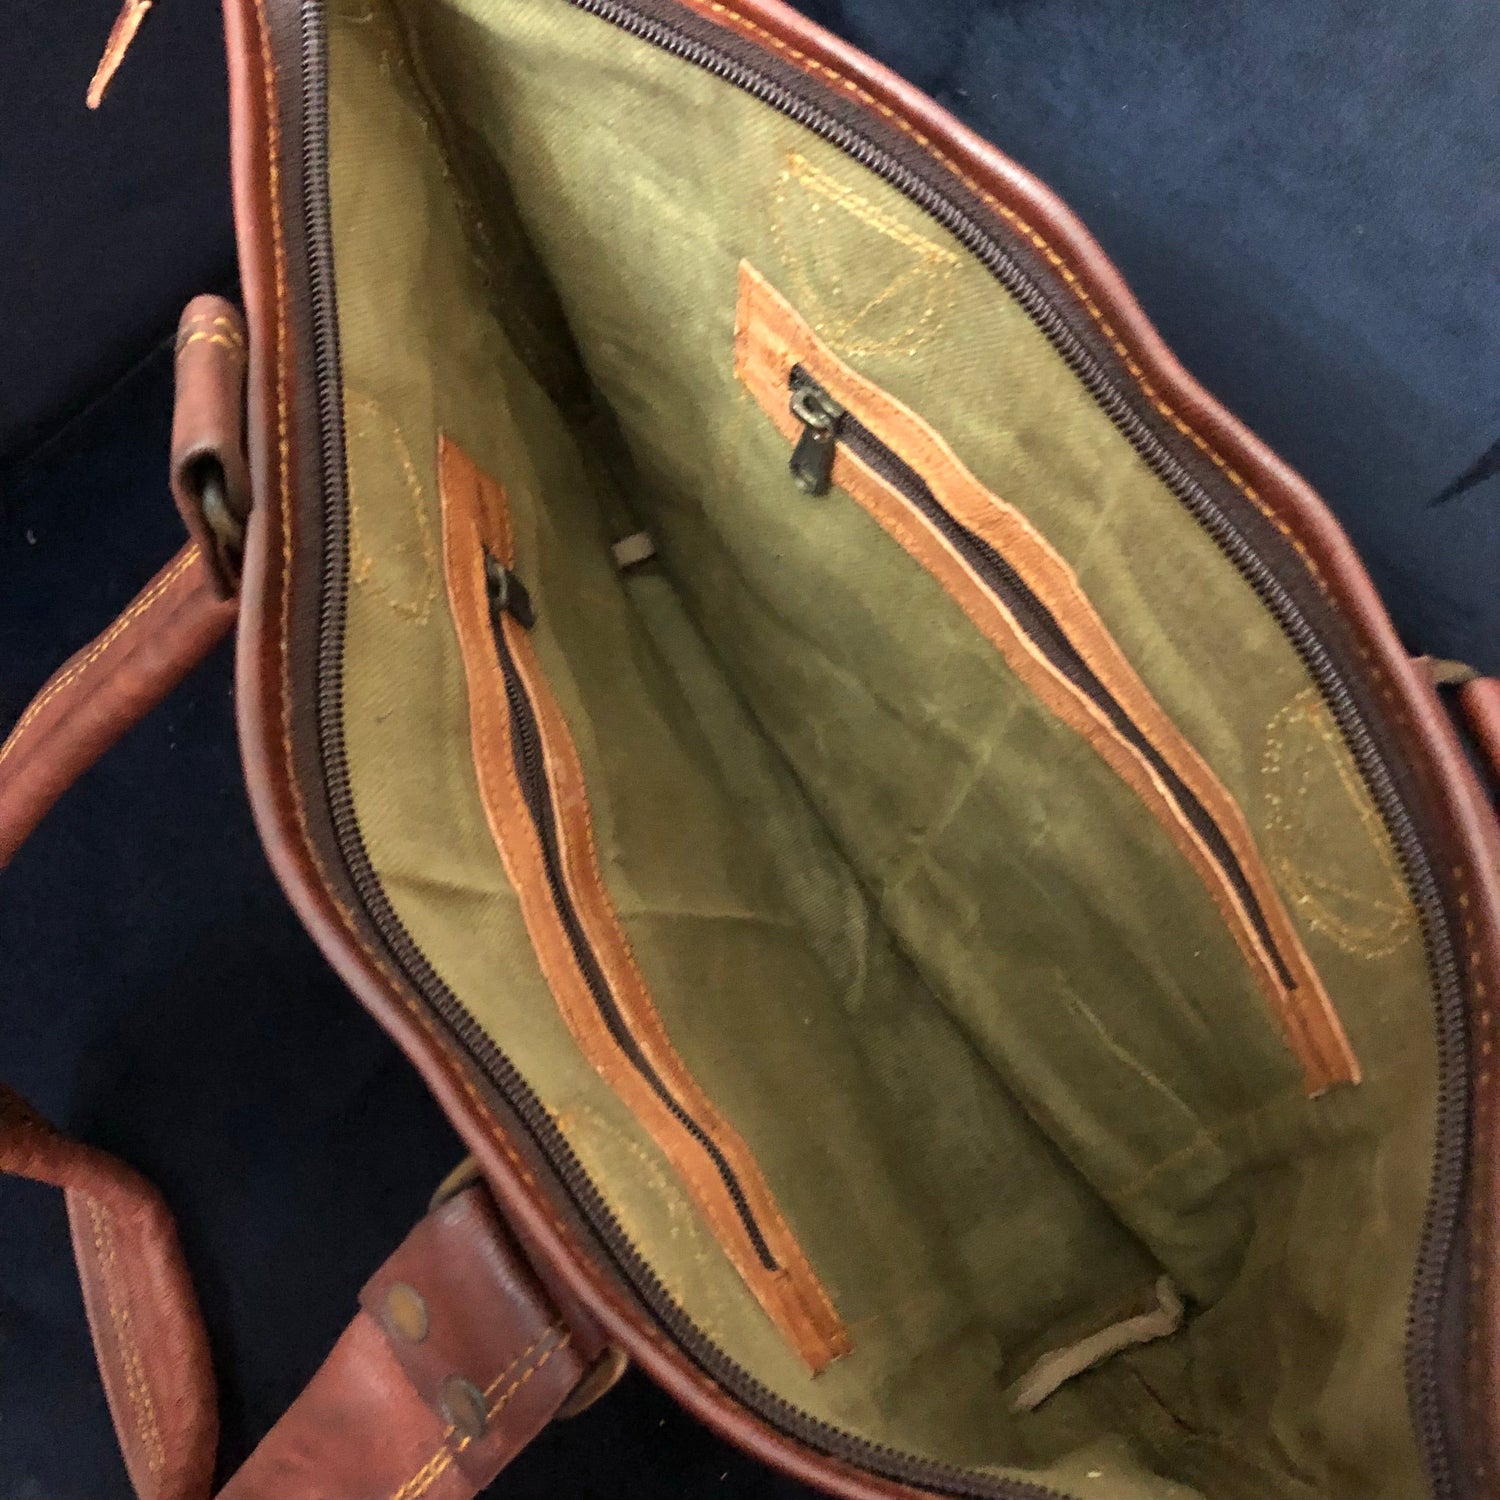 Leather Bucket Bag tote plain. (No outside pocket)